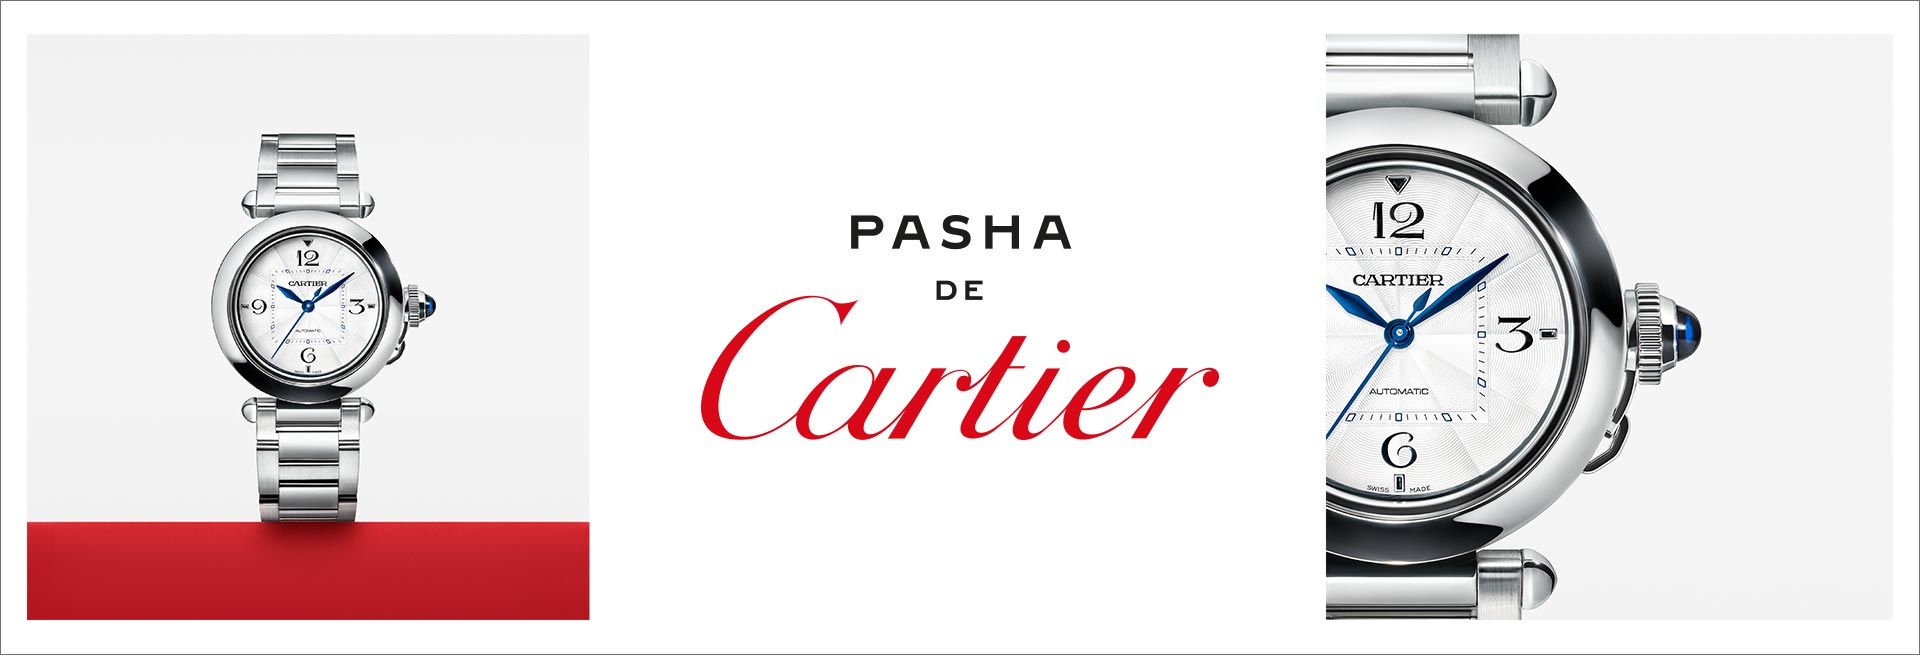 Cartier - Pasha De Cartier collection